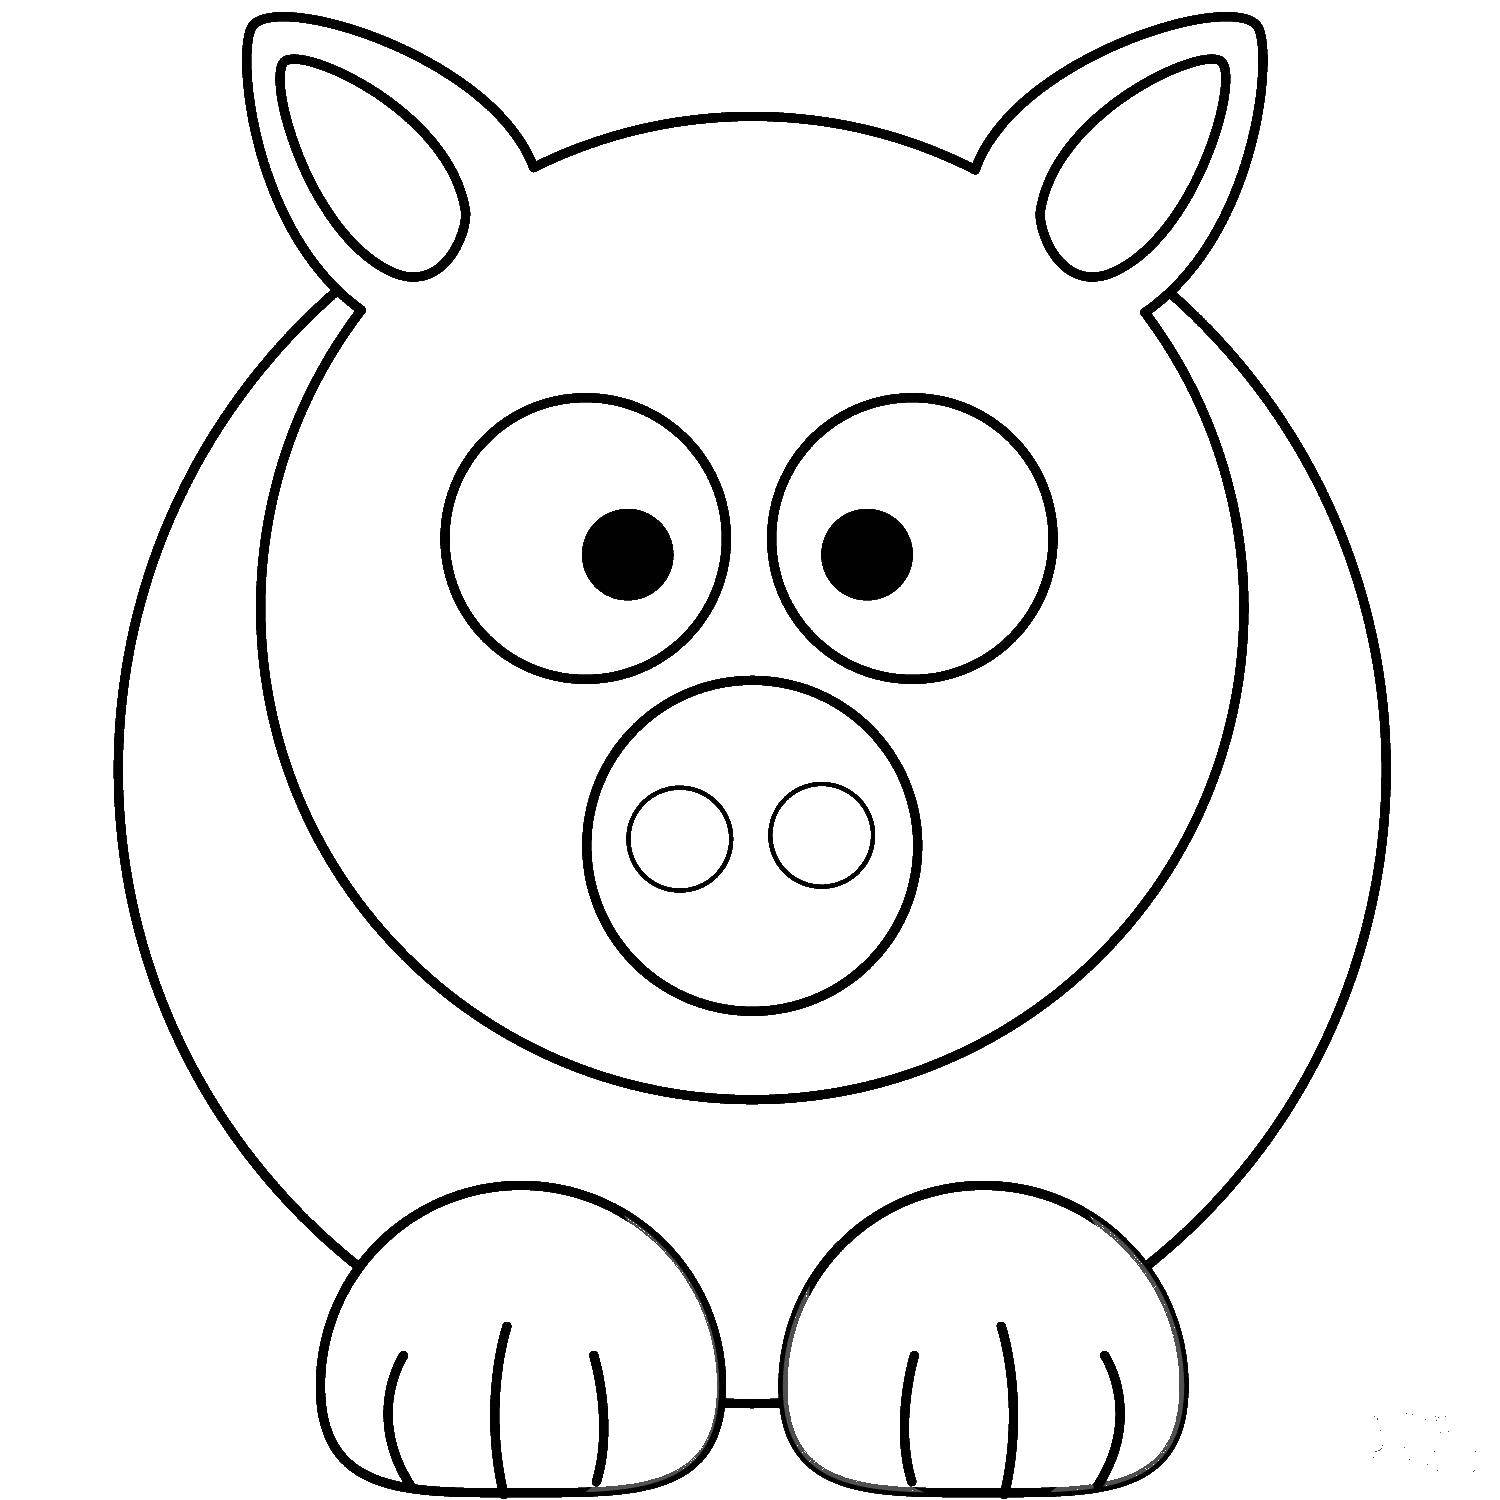 Название: Раскраска Свинка. Категория: Животные. Теги: Животные, свинка.